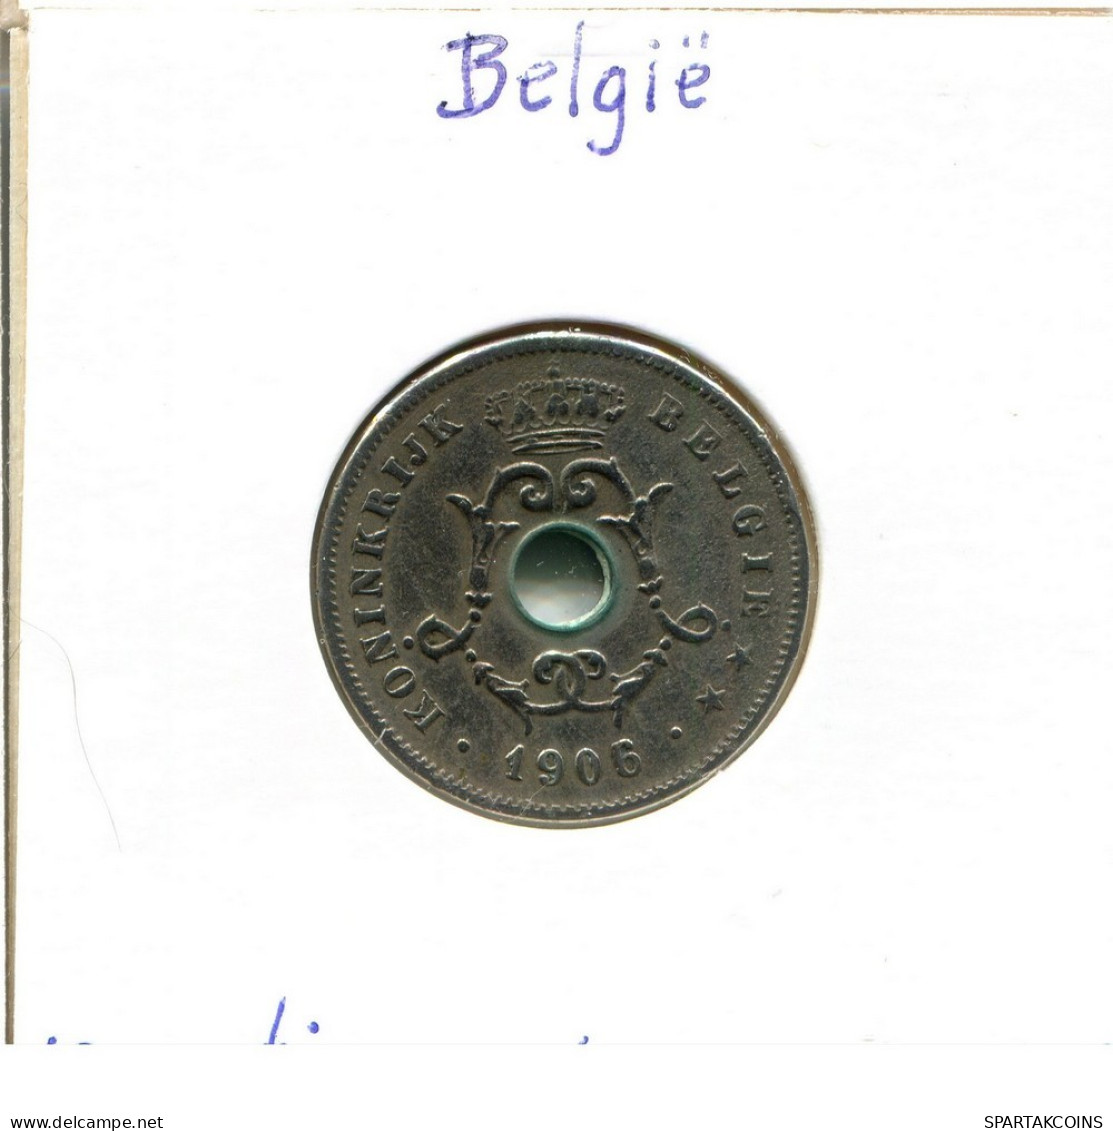 10 CENTIMES 1906 DUTCH Text BÉLGICA BELGIUM Moneda #BA280.E.A - 10 Centimes